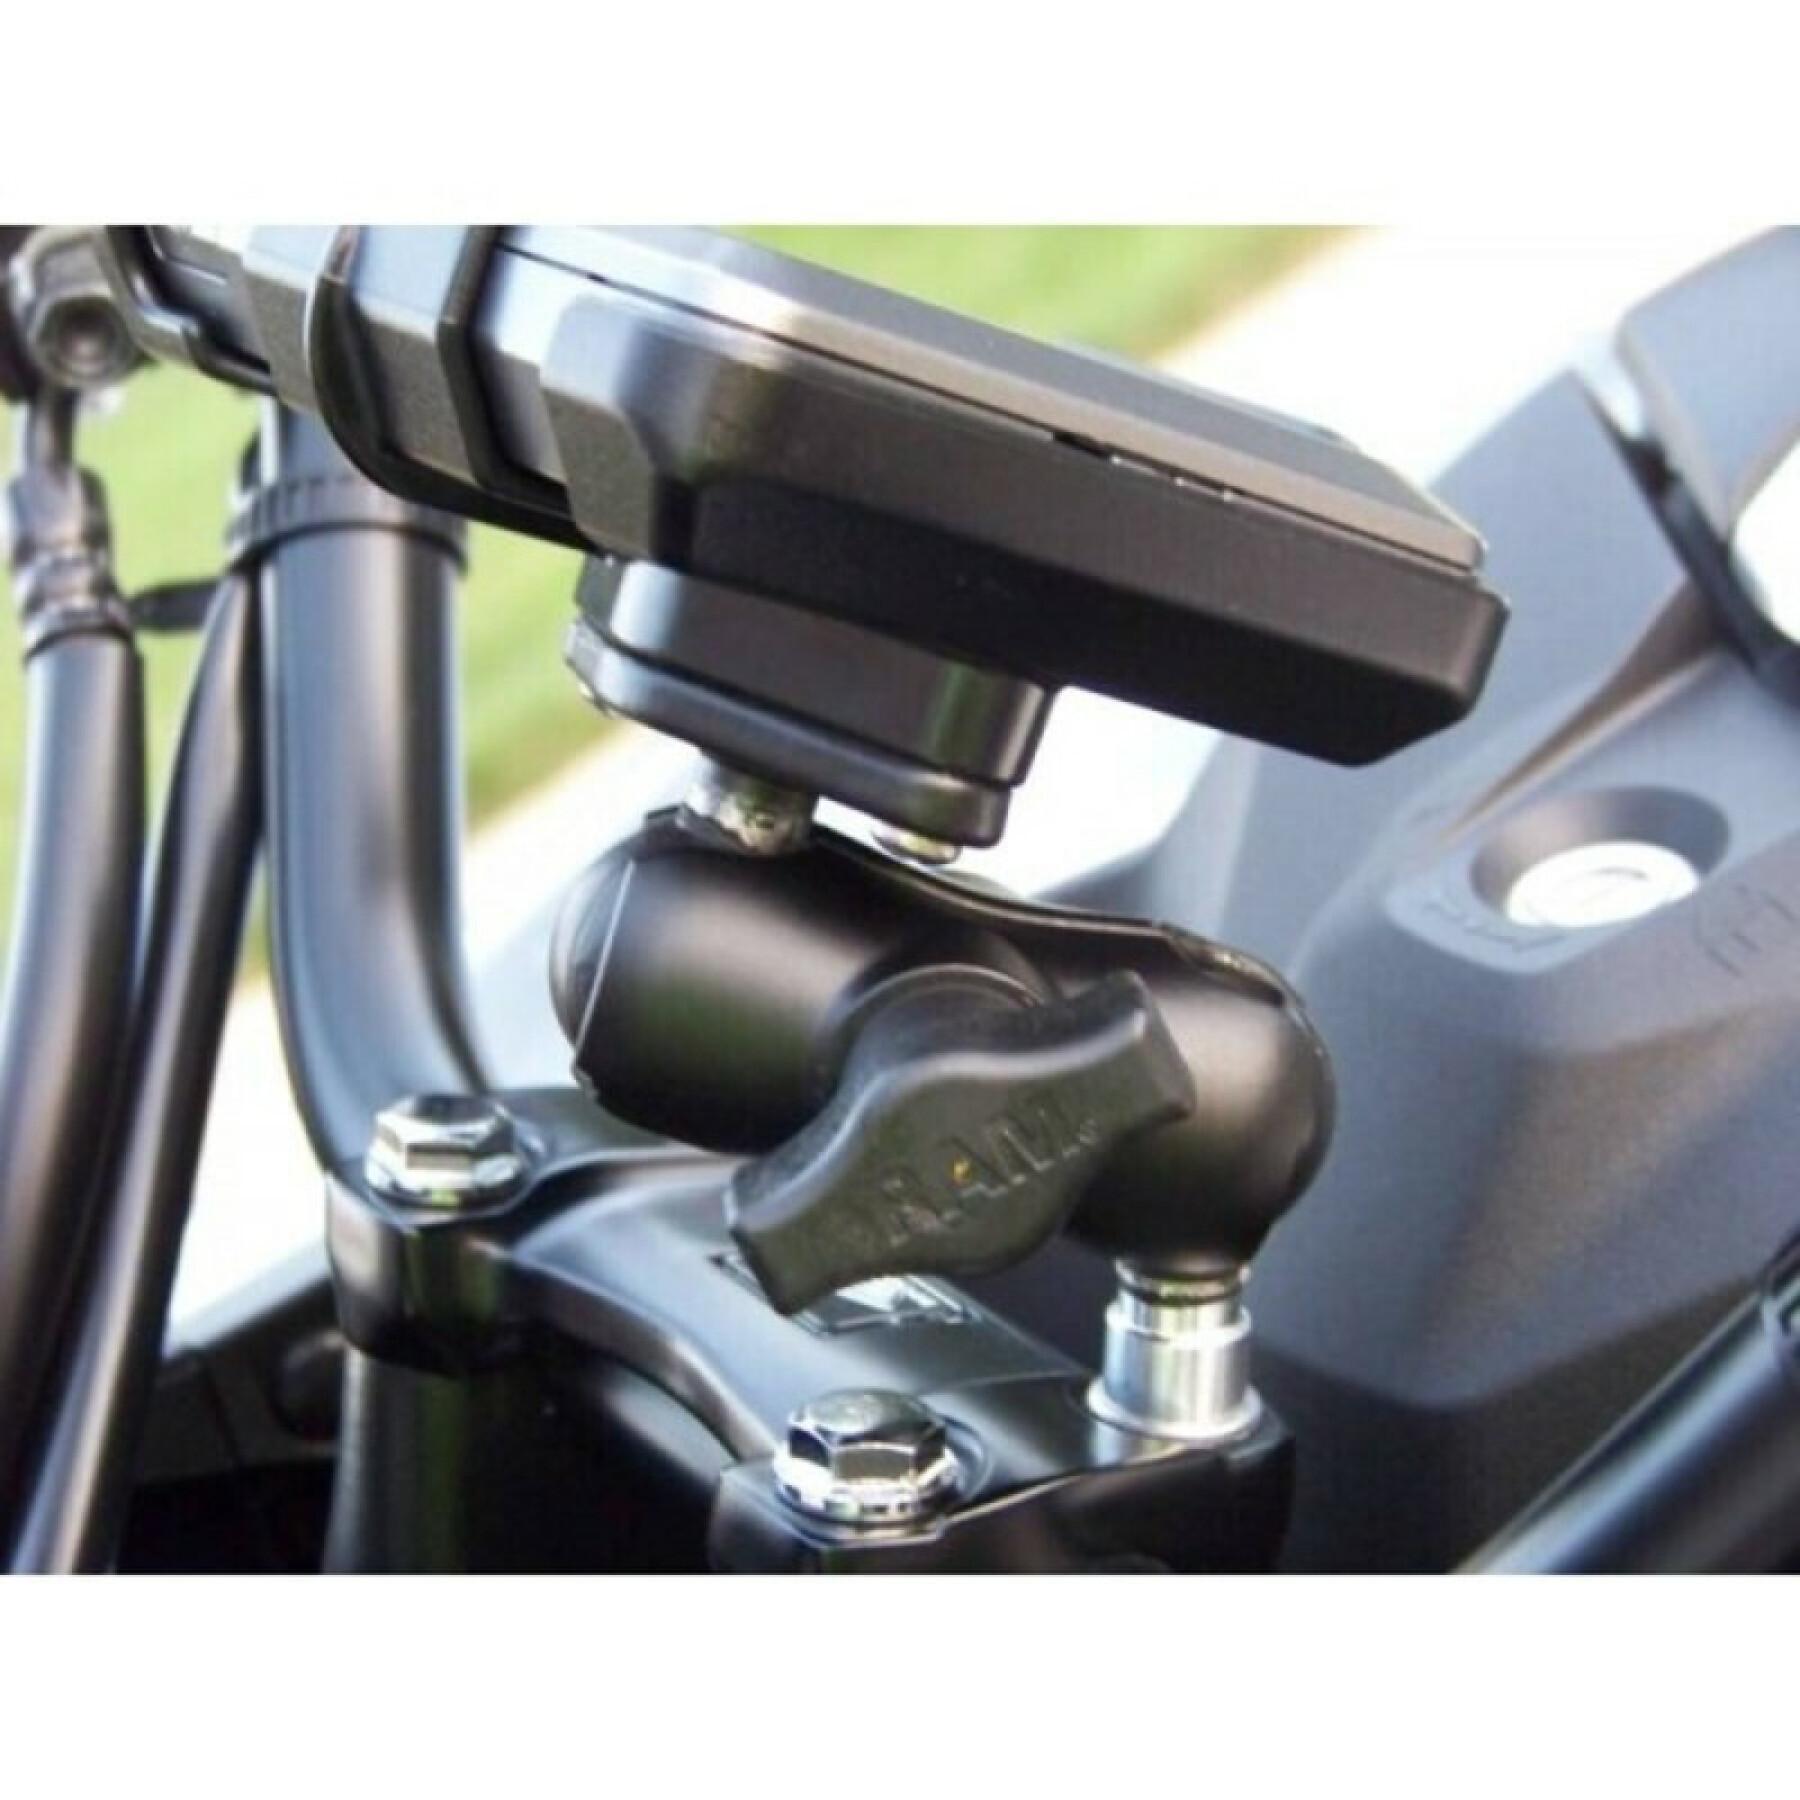 Smartphonehouder voor motorfietsvoet, bevestiging op trekkerbeugel via kogelbouten b RAM Mounts